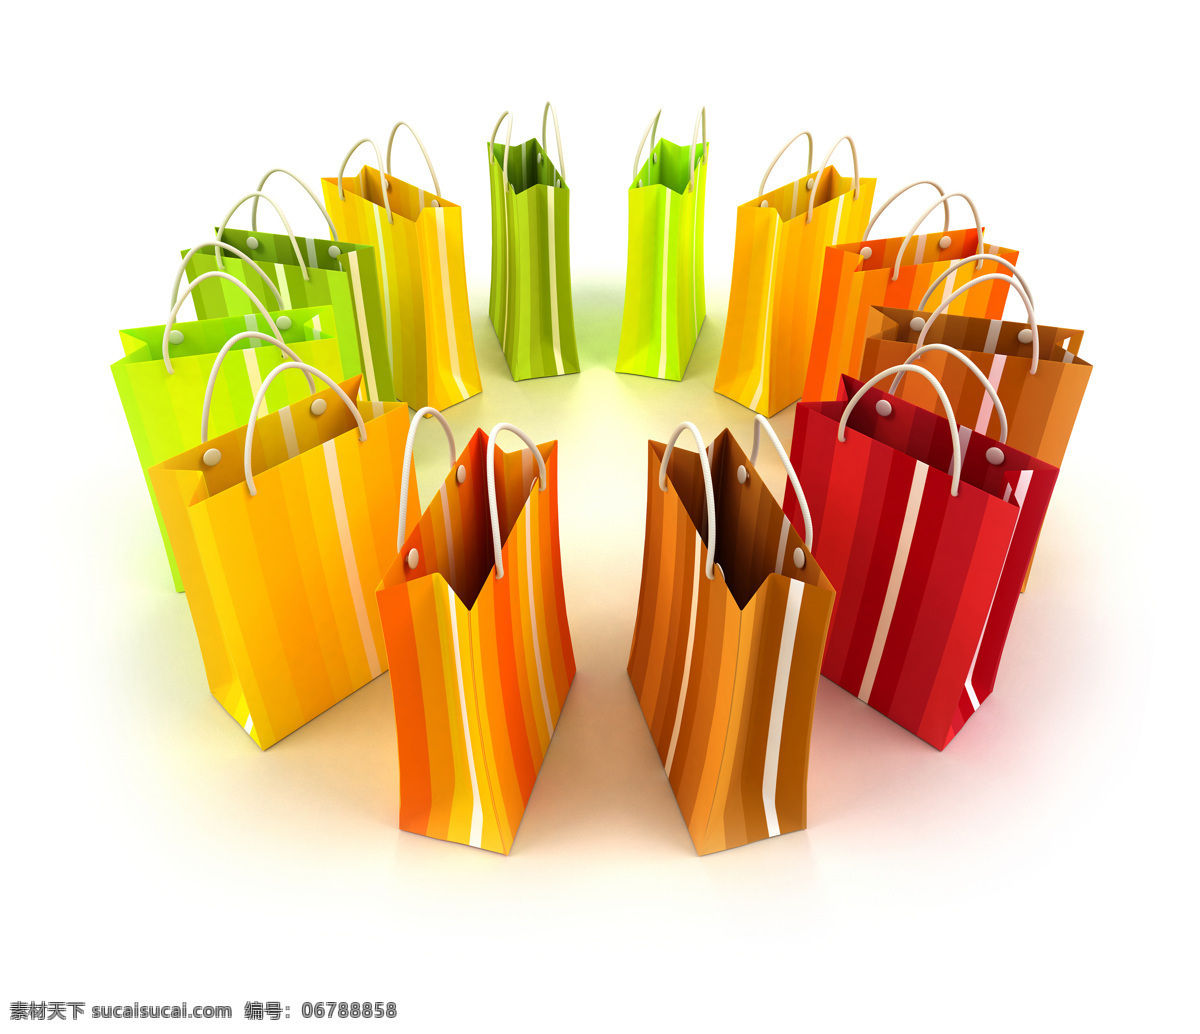 彩色购物纸袋 纸袋 环保袋 手提袋 手挽袋 购物袋 五颜六色纸袋 彩色纸袋 生活素材 生活百科